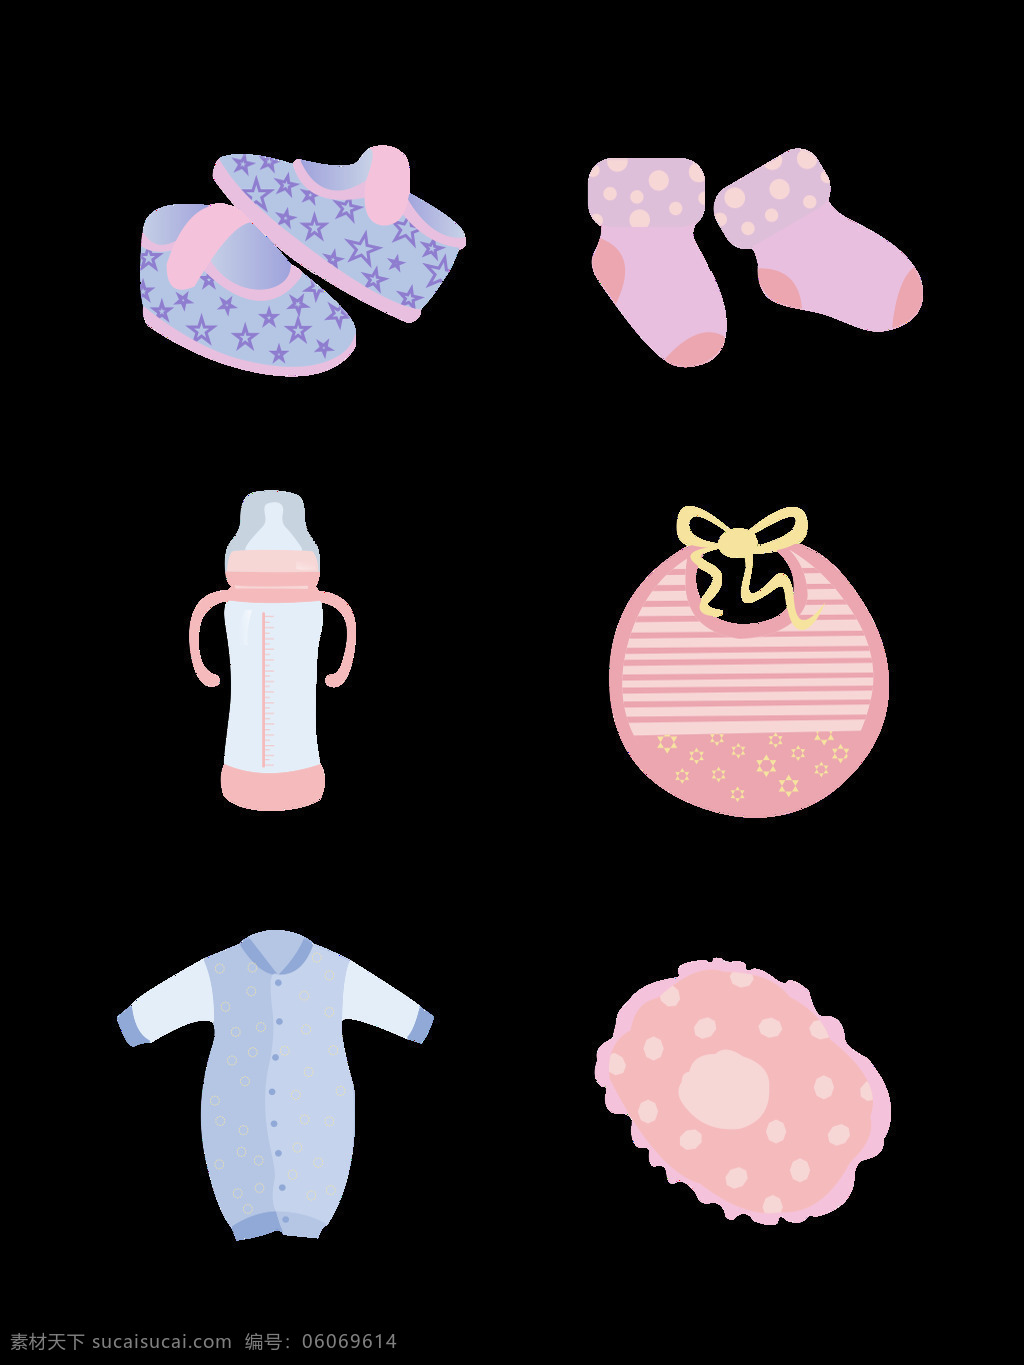 婴儿用品 元素 卡通 可爱 宝宝 用品 卡通可爱 鞋子 袜子 衣服 元素设计 蓝粉色 奶瓶 围兜 小枕头